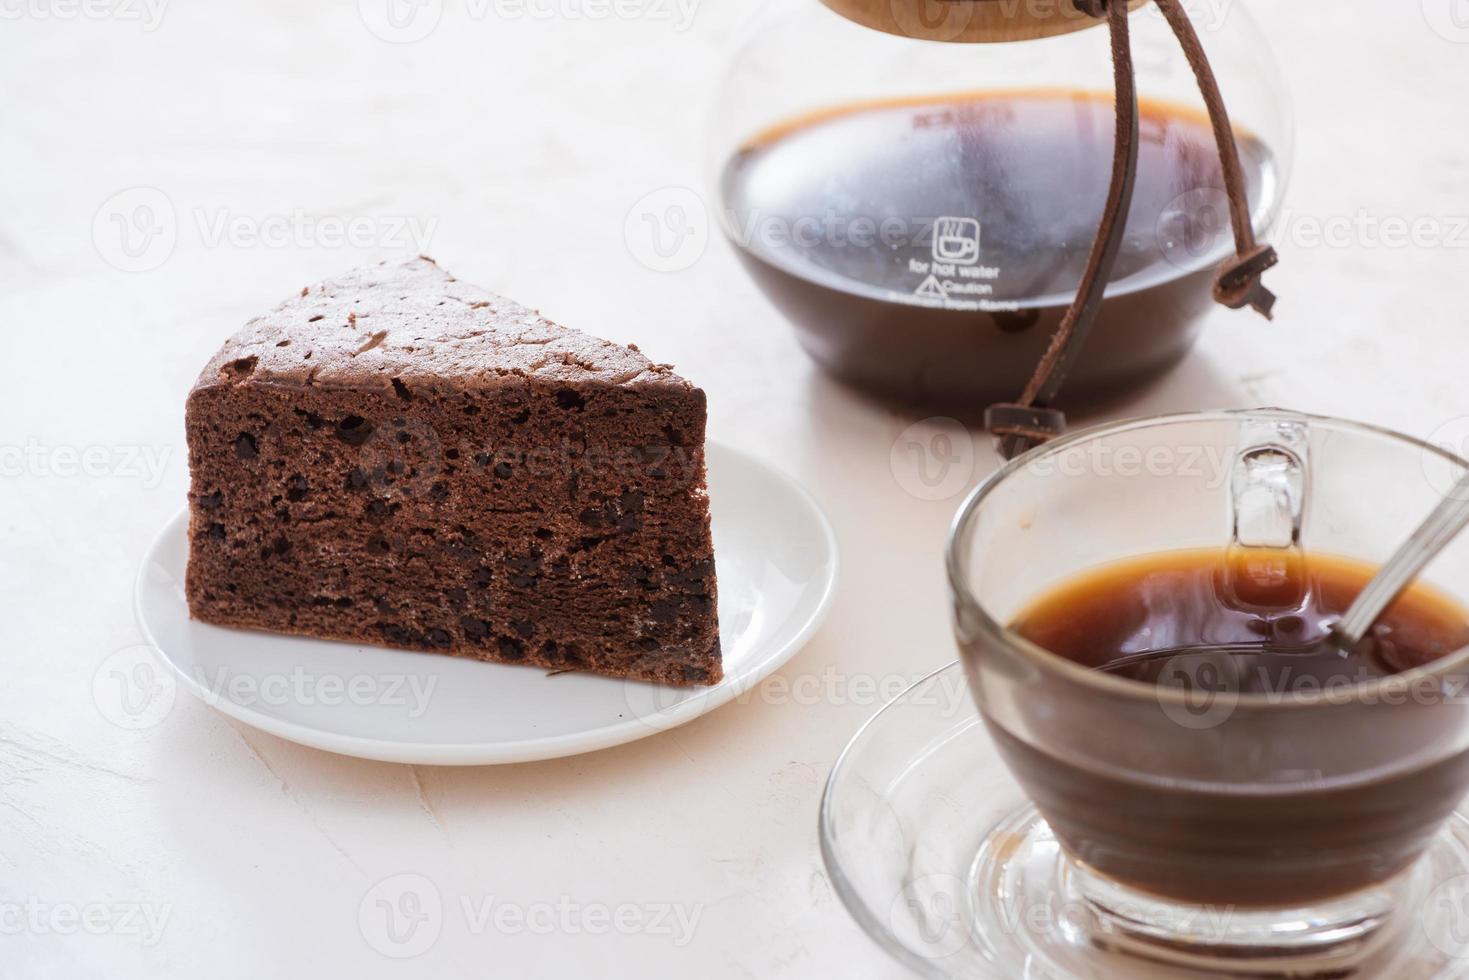 tropfkaffeetropfer und gemahlener kaffee mit glastropfkanne, tasse und schokoladenkuchen foto